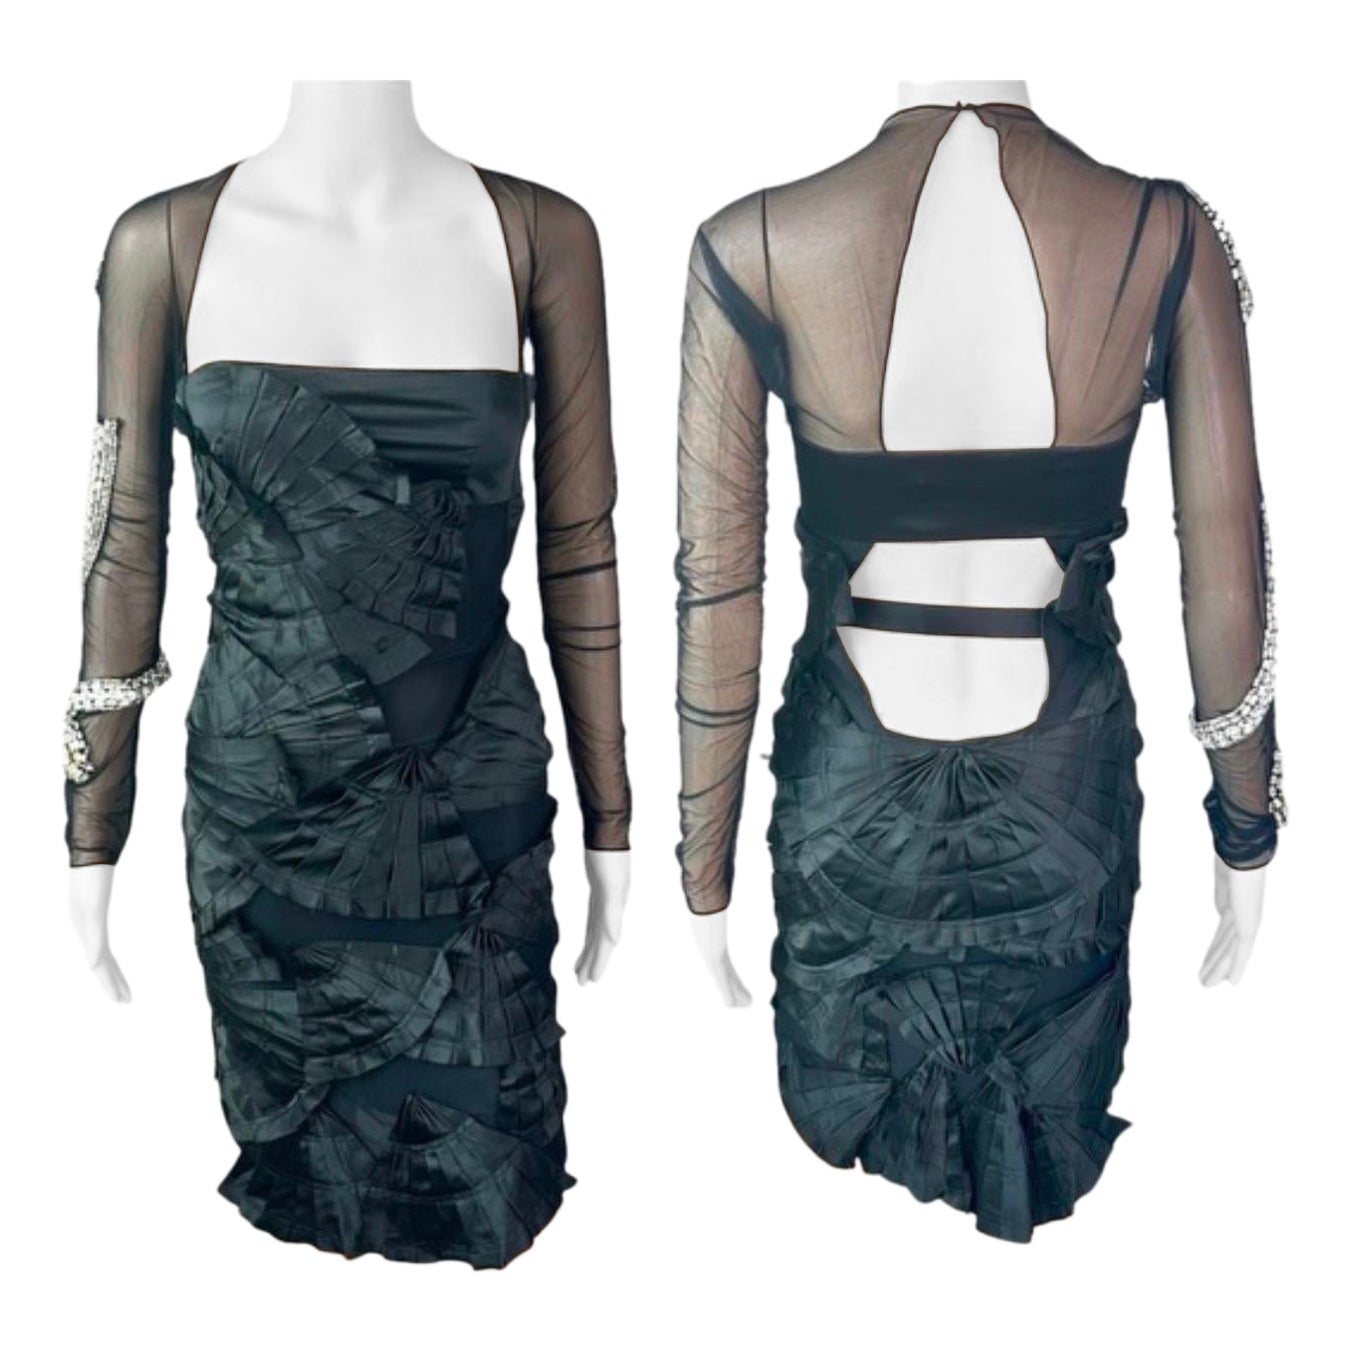 Tom Ford for Gucci S/S 2004 Runway Schwarzes Kleid mit Schlangenverzierung und transparentem Ausschnitt im Angebot